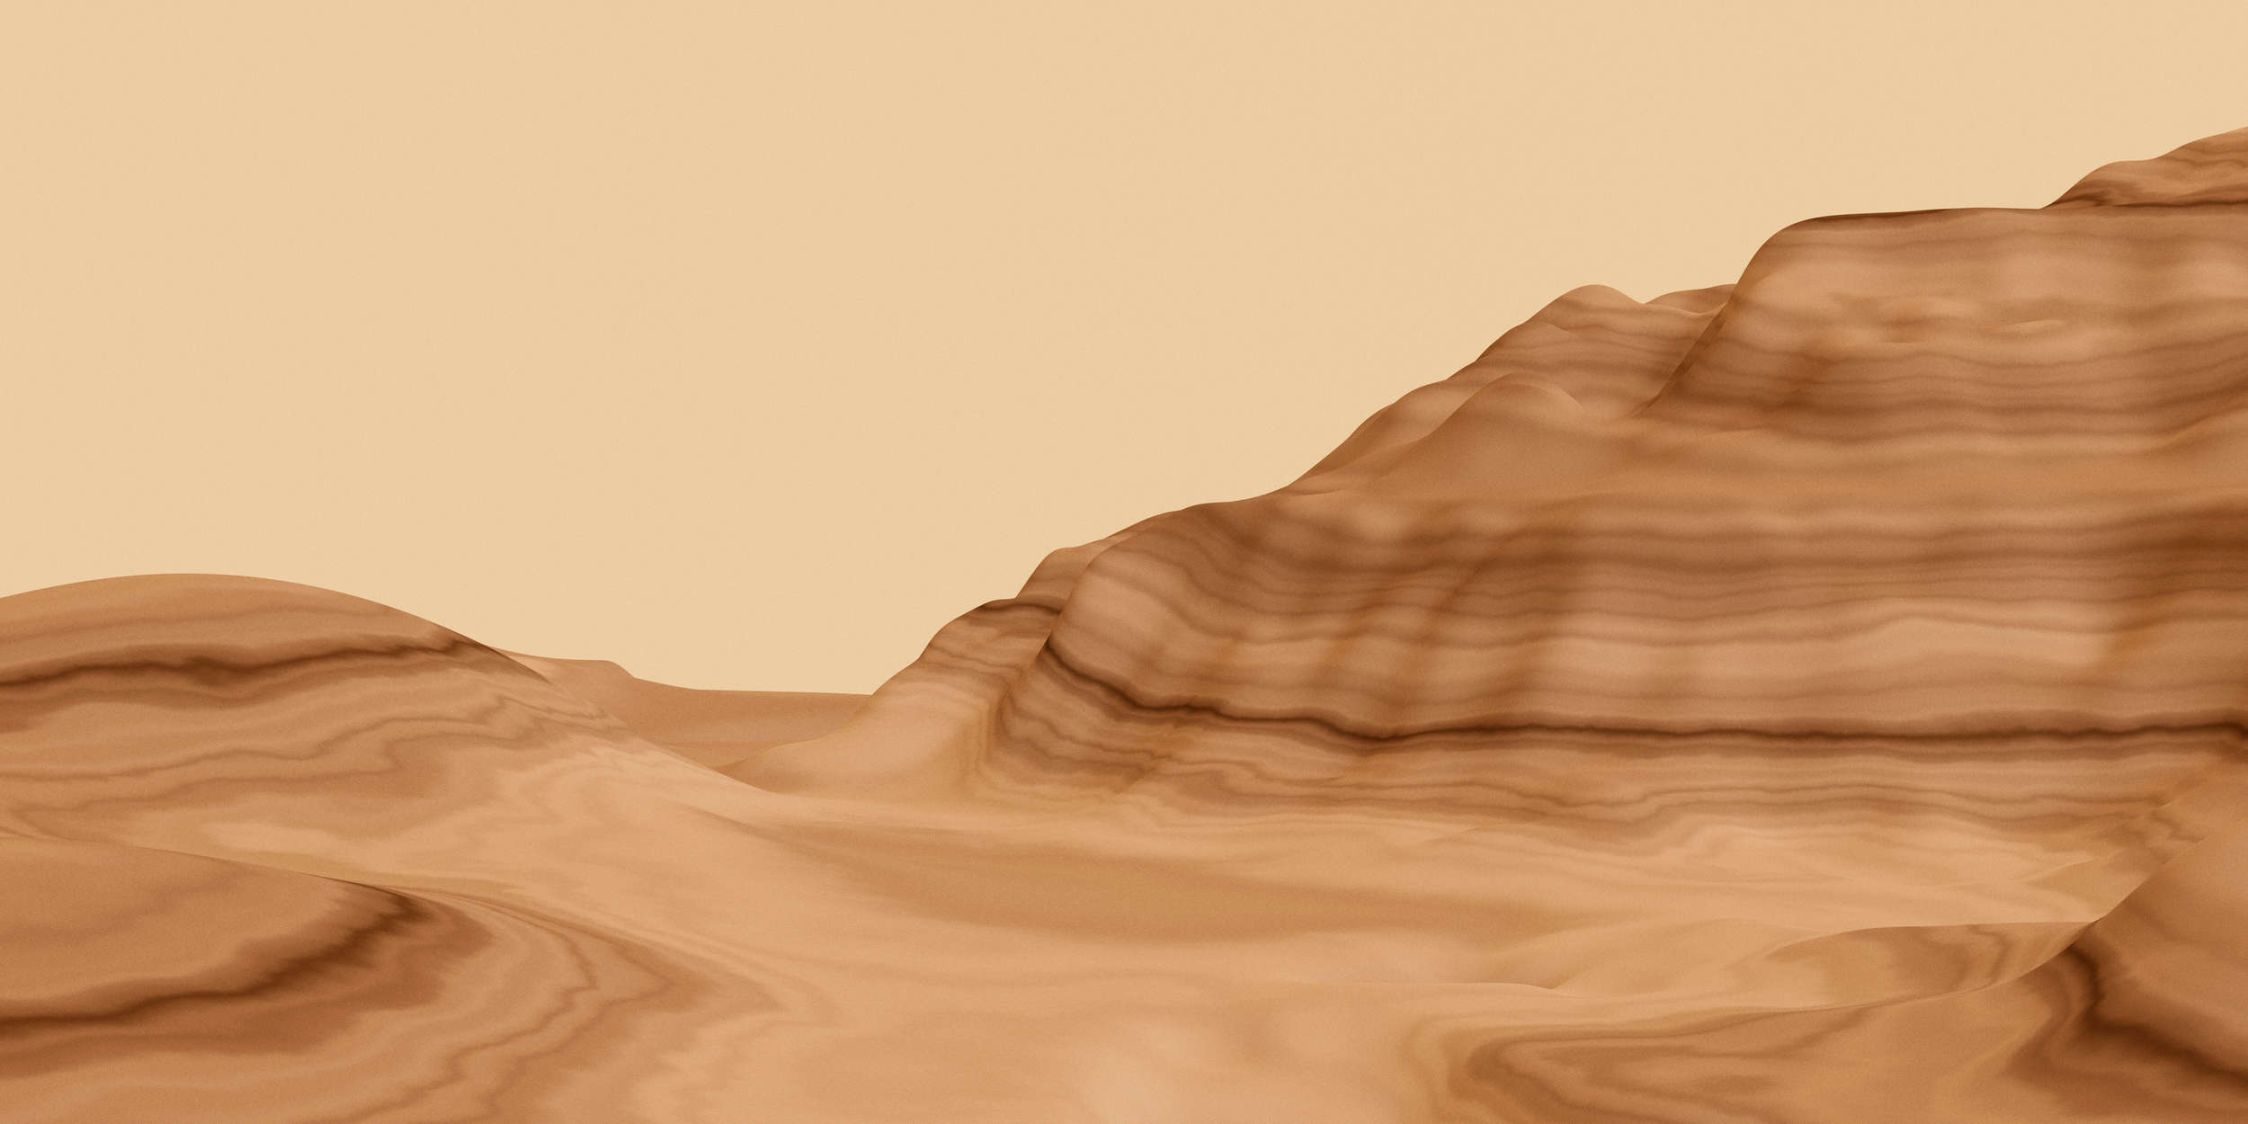             Fotomurali »luke« - Paesaggio astratto del deserto - Materiali non tessuto a trama leggera
        